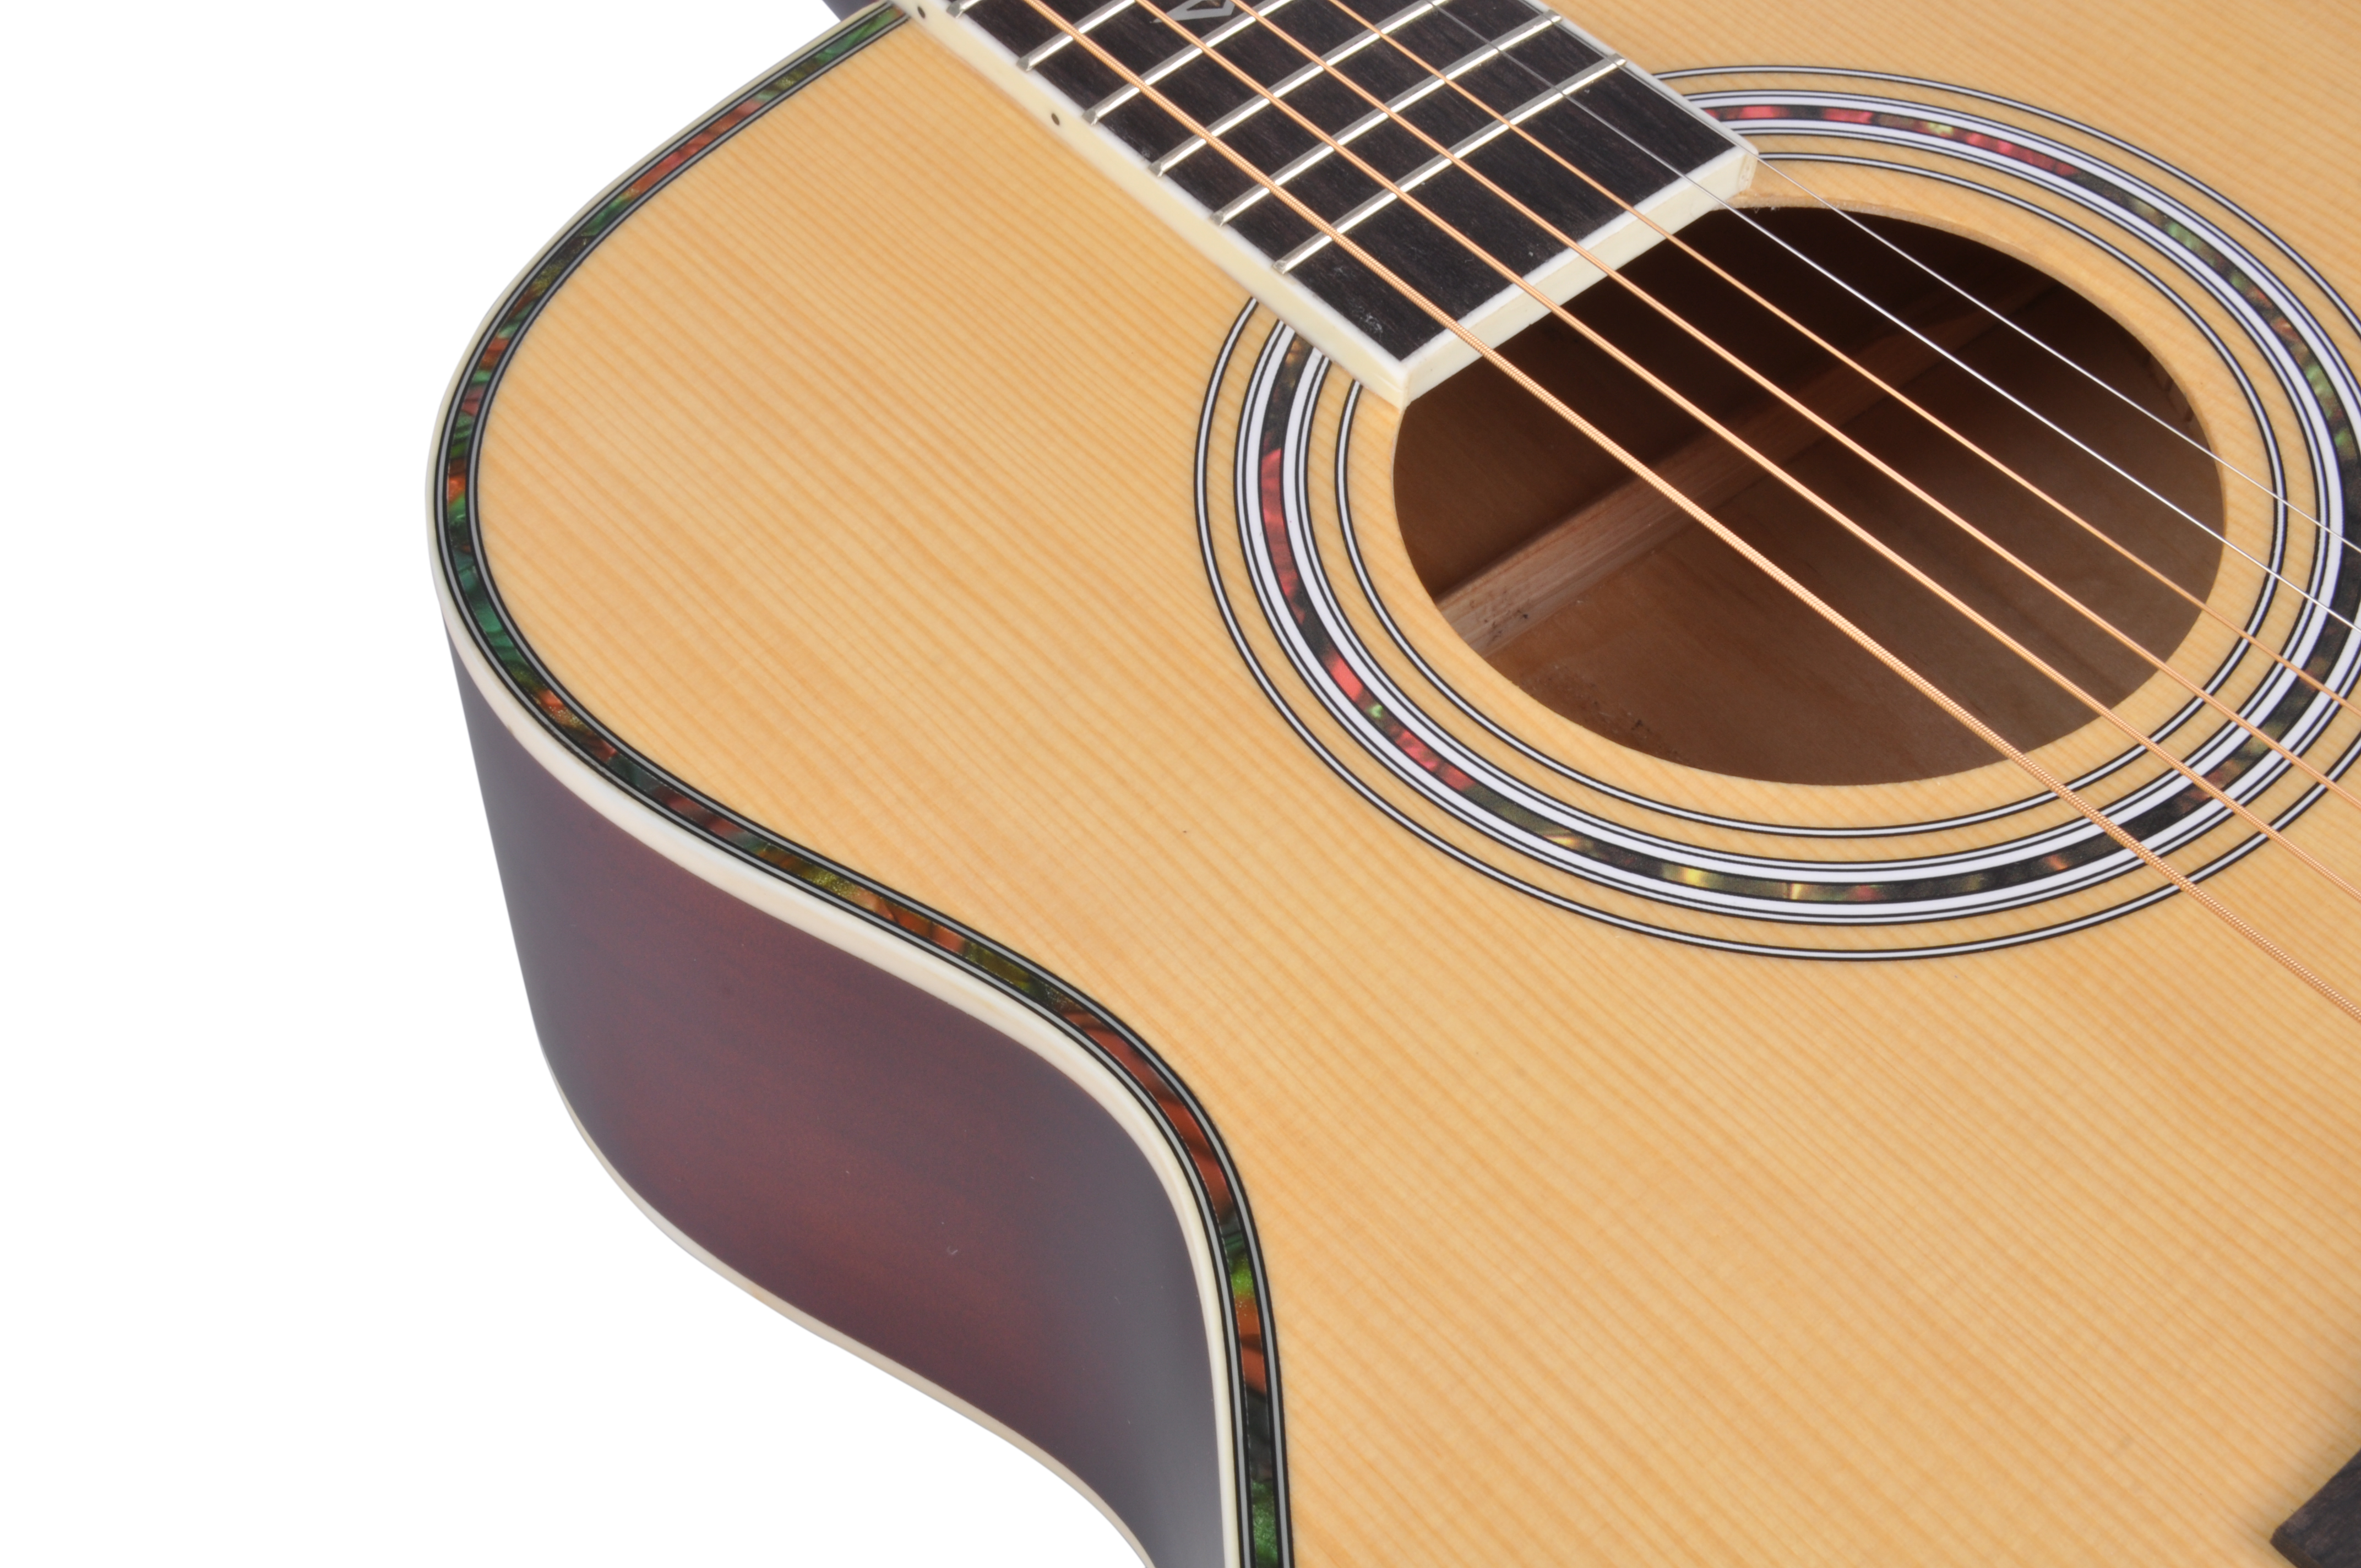 36-дюймовая студенческая акустическая гитара серии Winzz с круглым корпусом (AF168W-36)